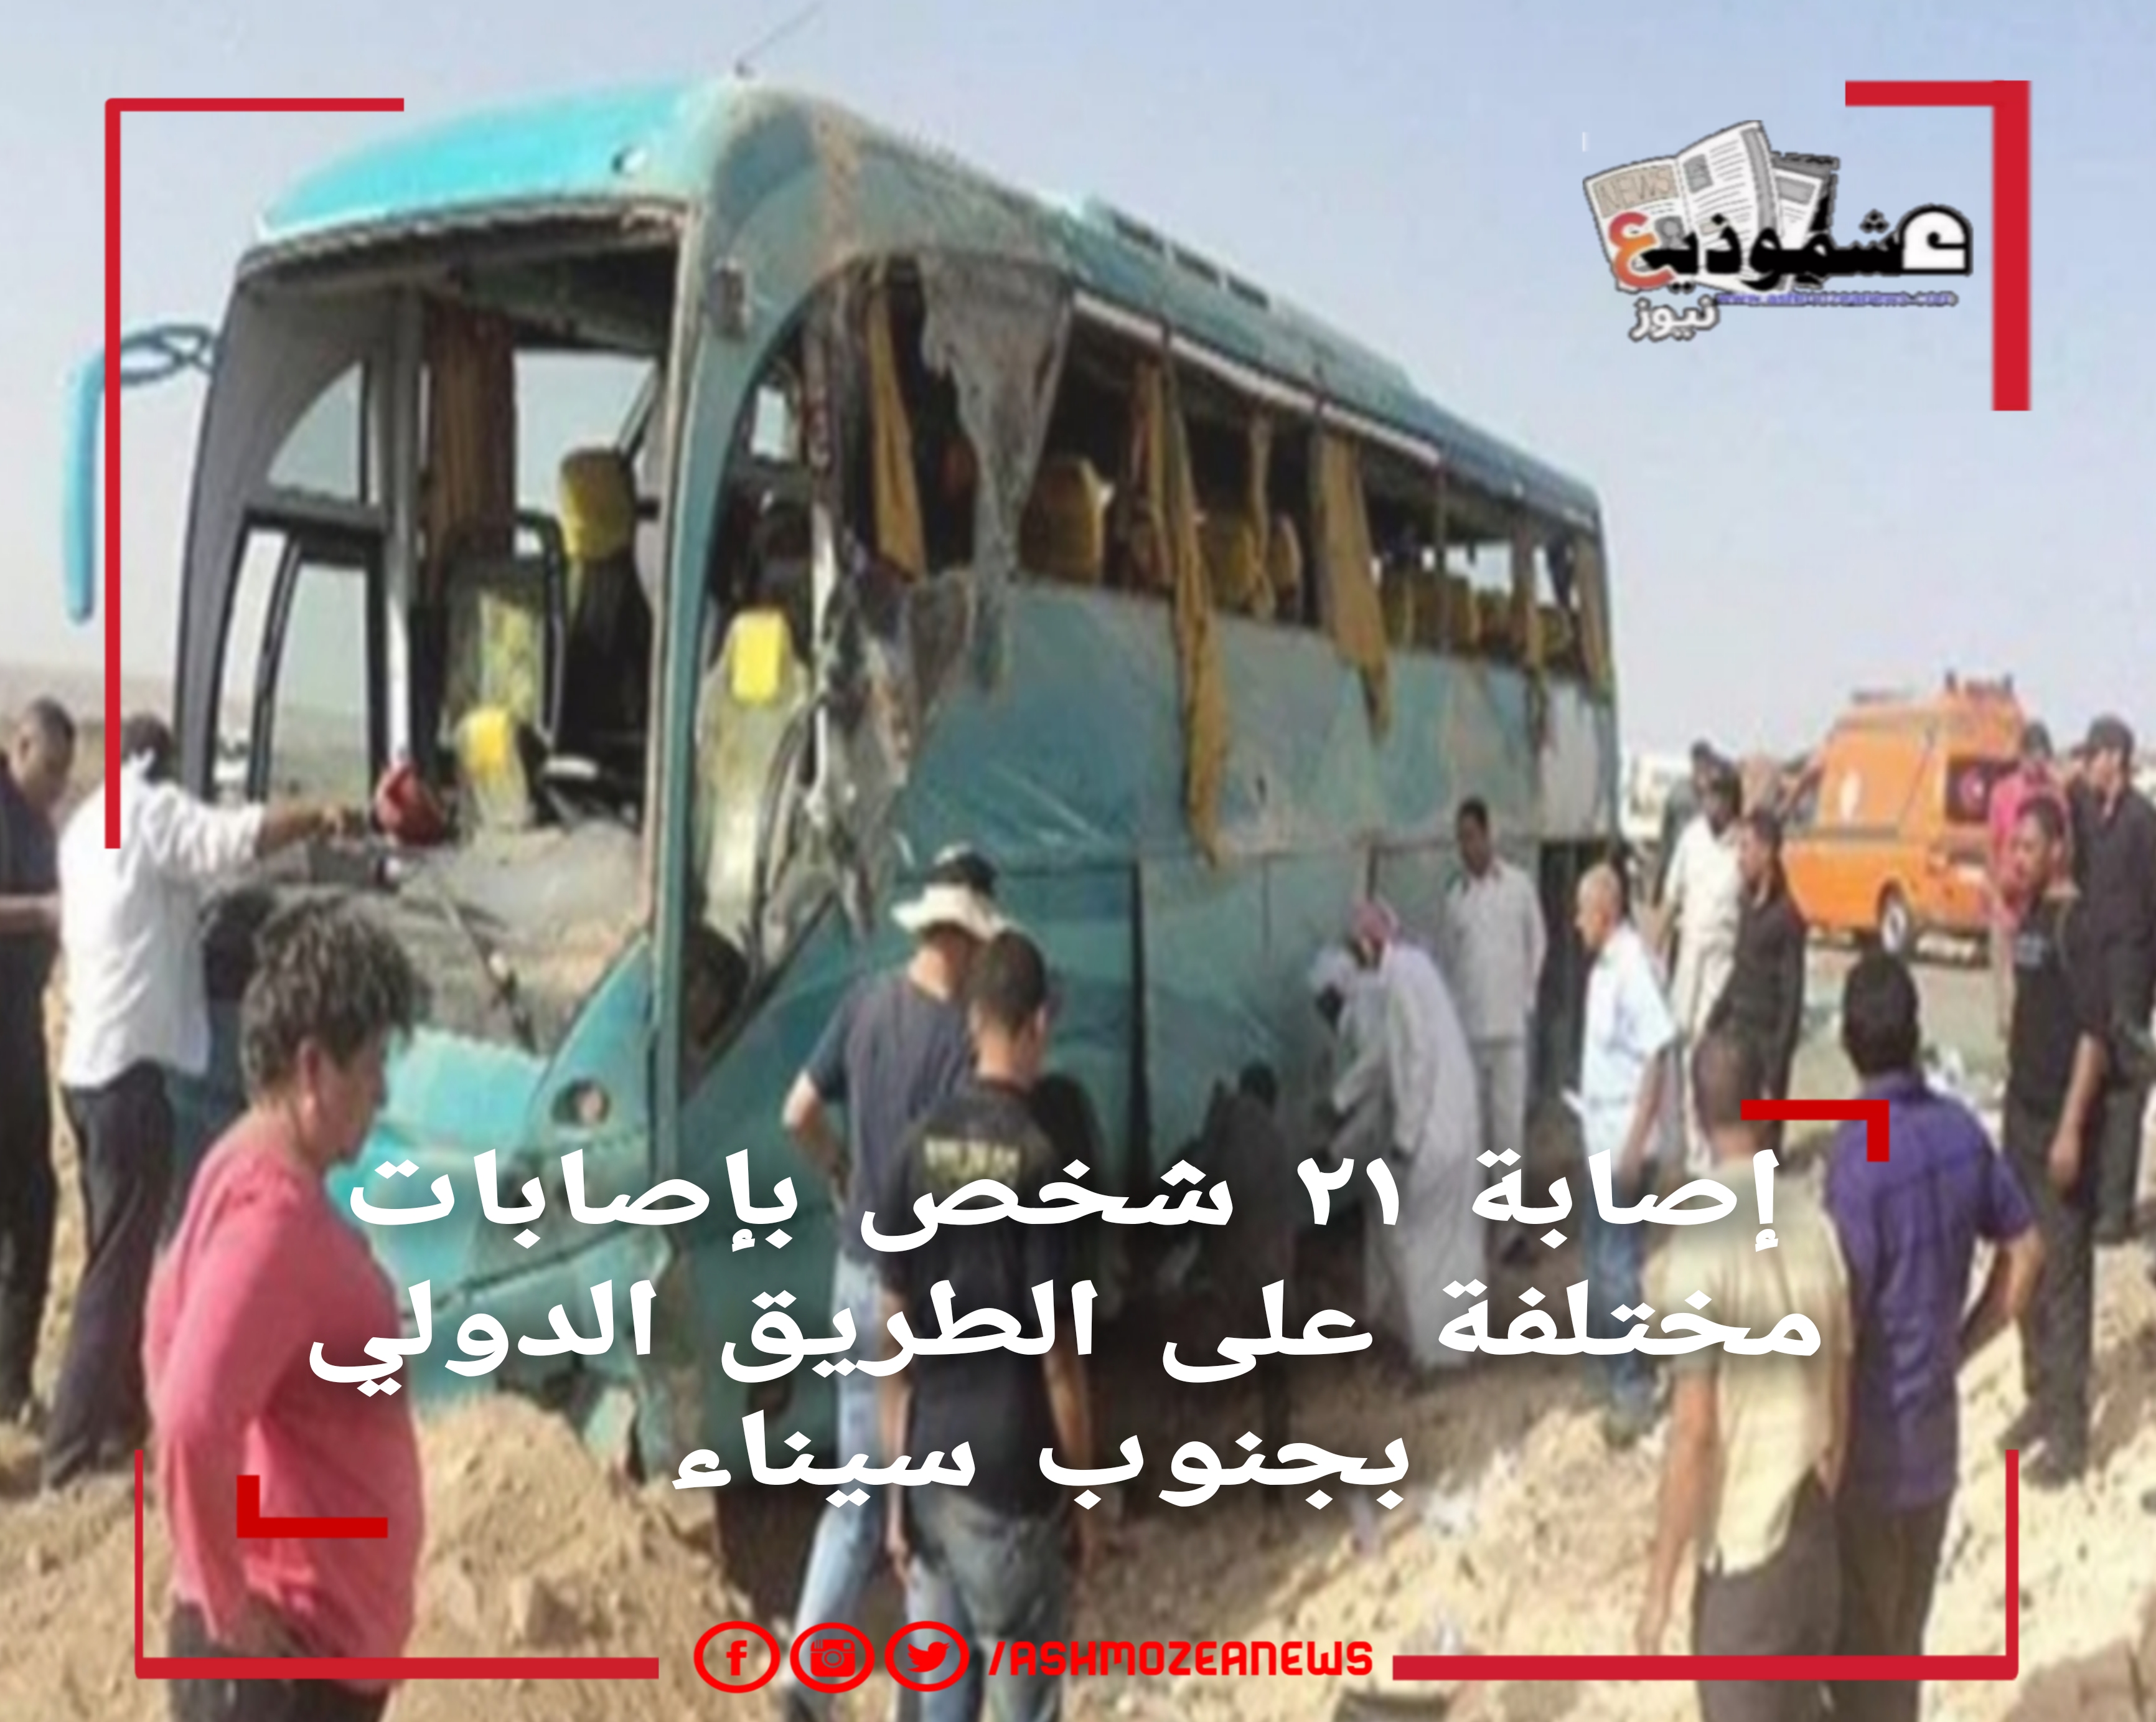 إصابة ٢١ شخص بإصابات مختلفة على الطريق الدولي بجنوب سيناء